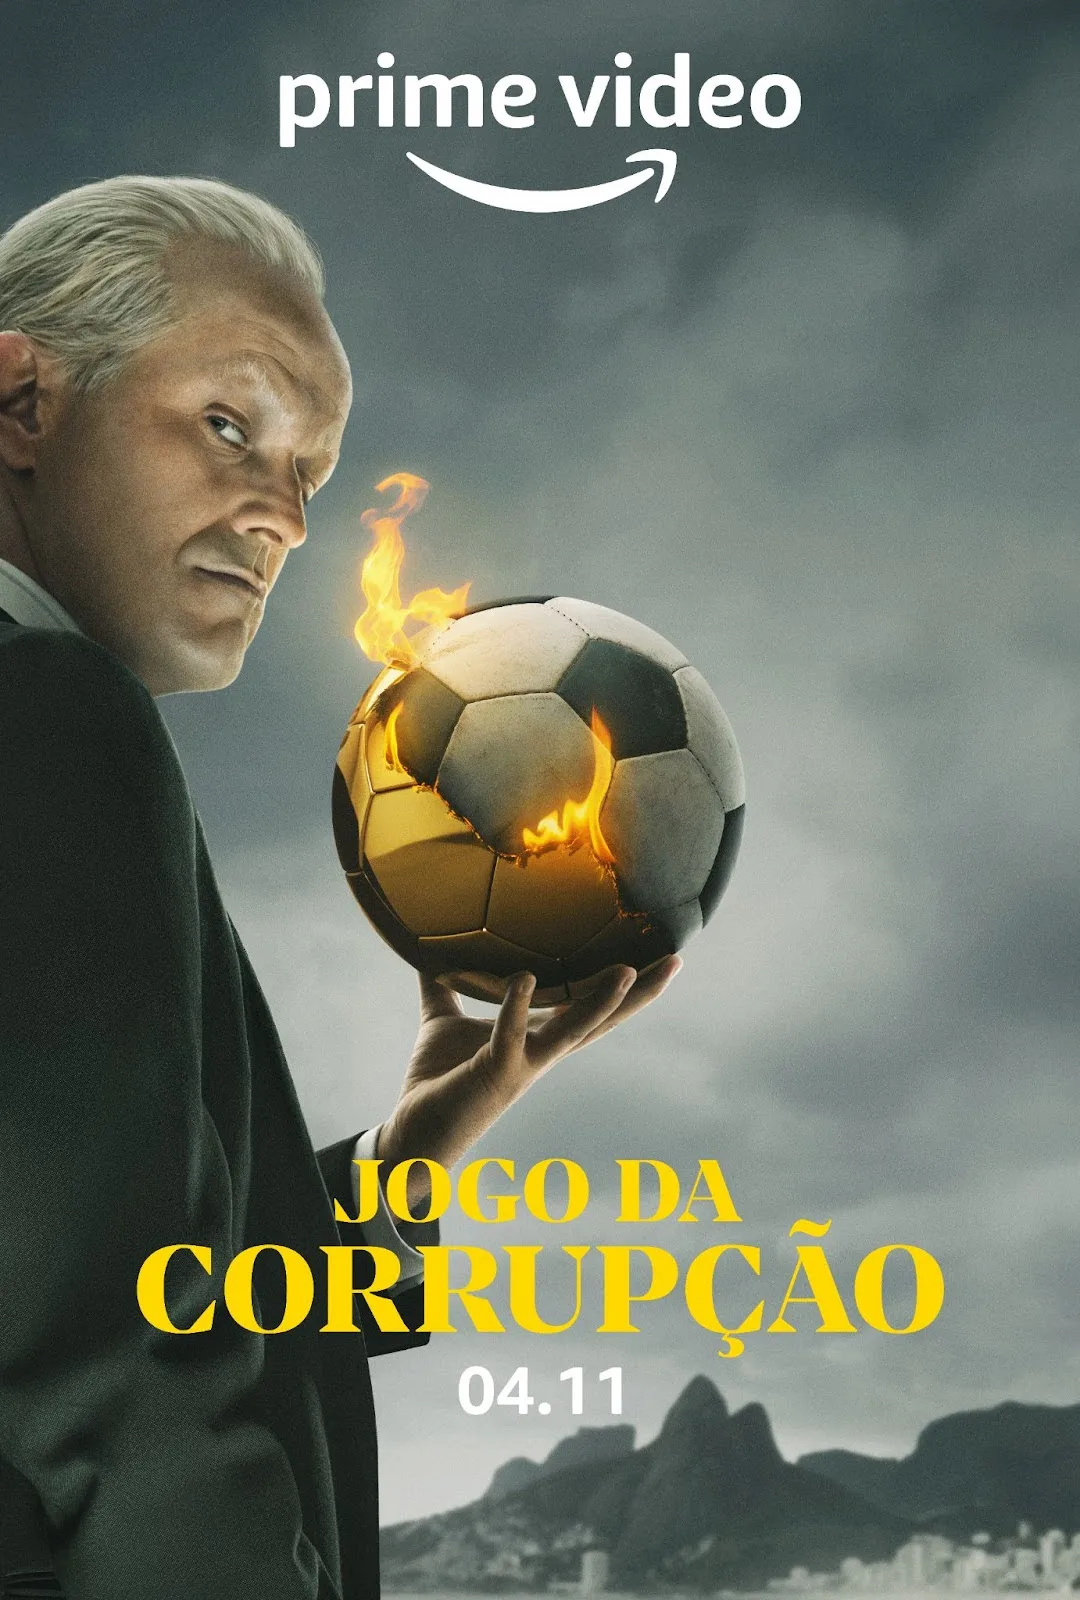 jogo da corrupção 2a temporada de el presidente amazon prime video (2)